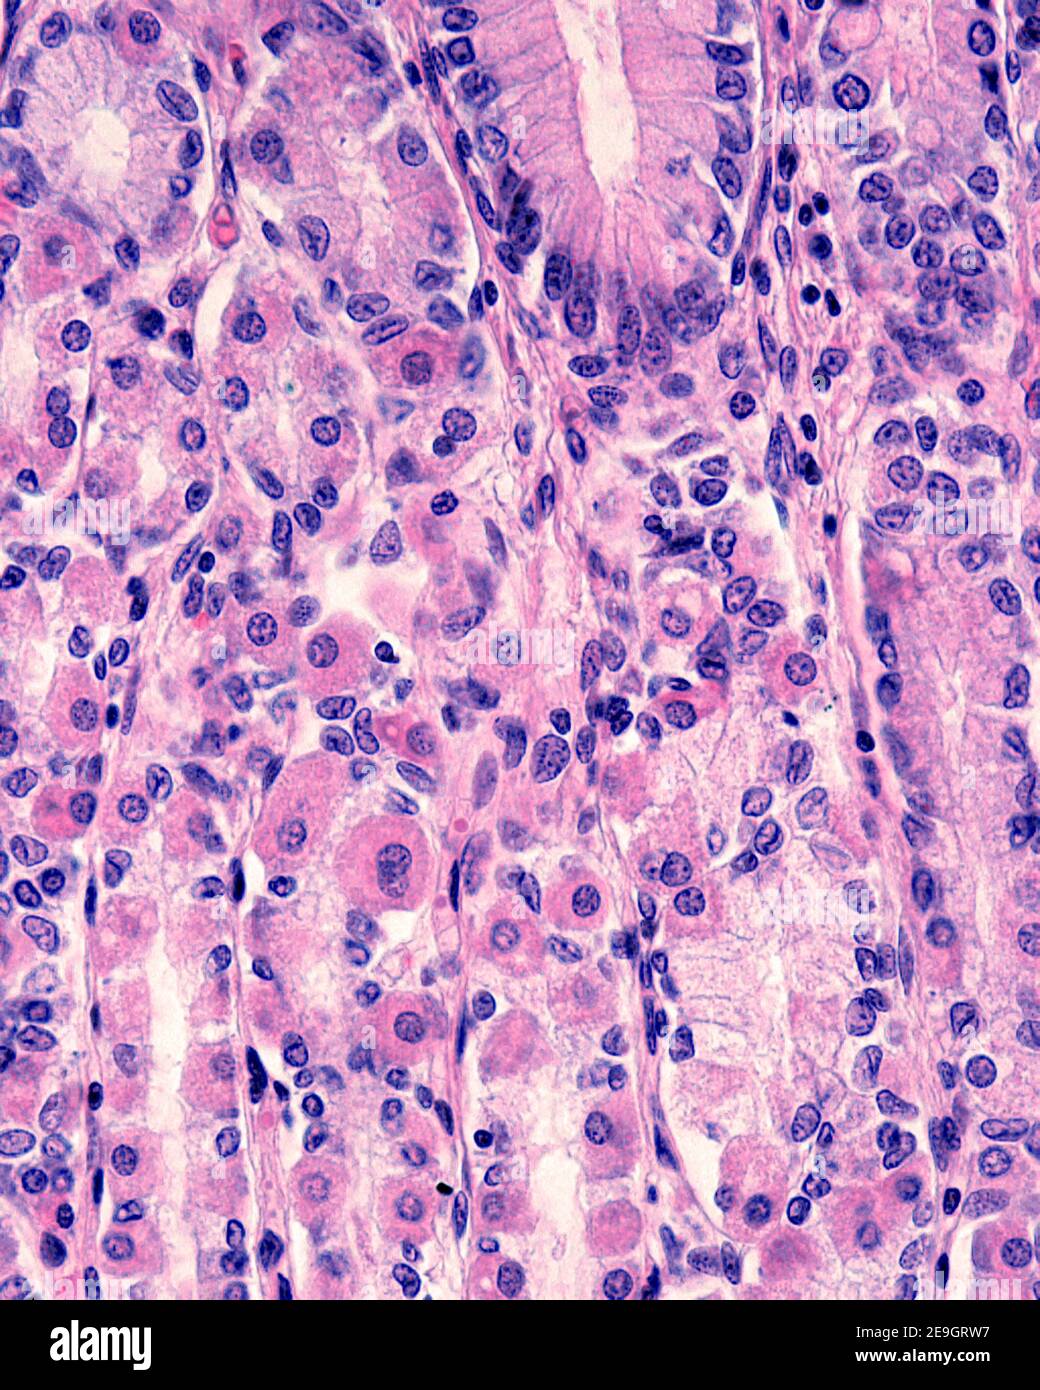 Las células parietales (oxínticas) son un tipo de célula localizada en las glándulas fundicas del estómago. Tienen un citoplasma eosinofílico (rosa). Foto de stock